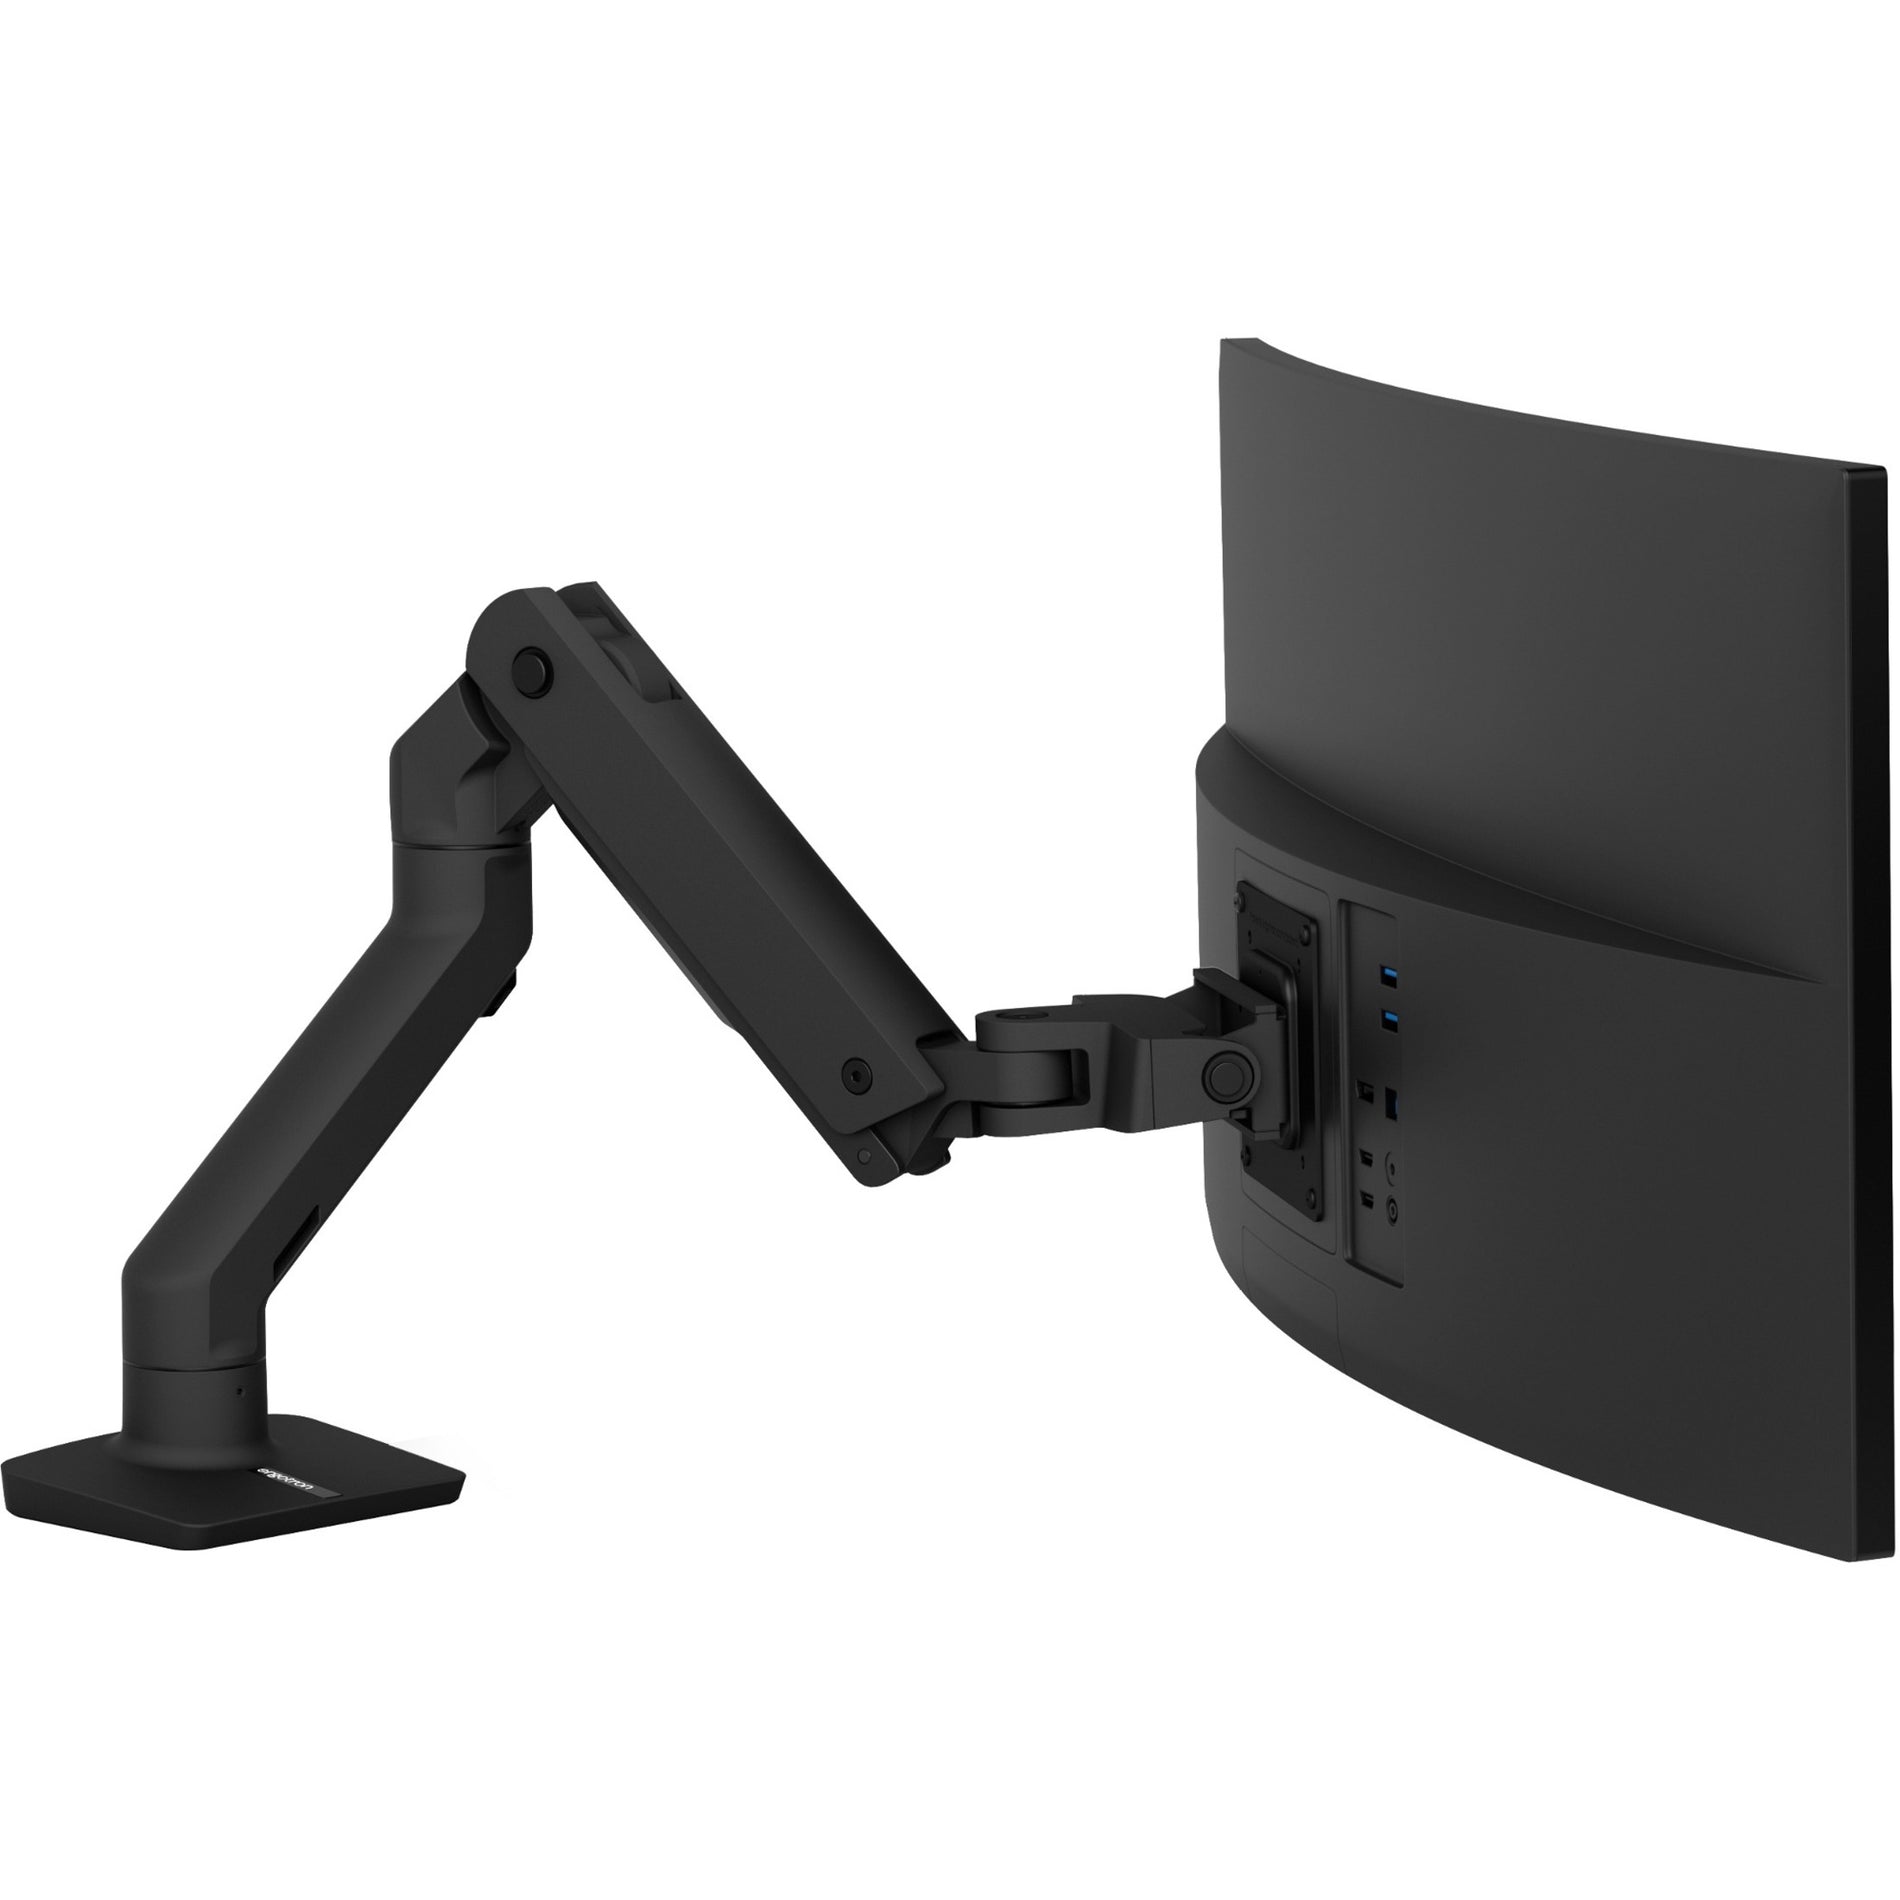 Ergotron 45-475-224 HX Desk Monitor Arm, Matte Black - Cable Management, Ergonomic, 360° Rotation